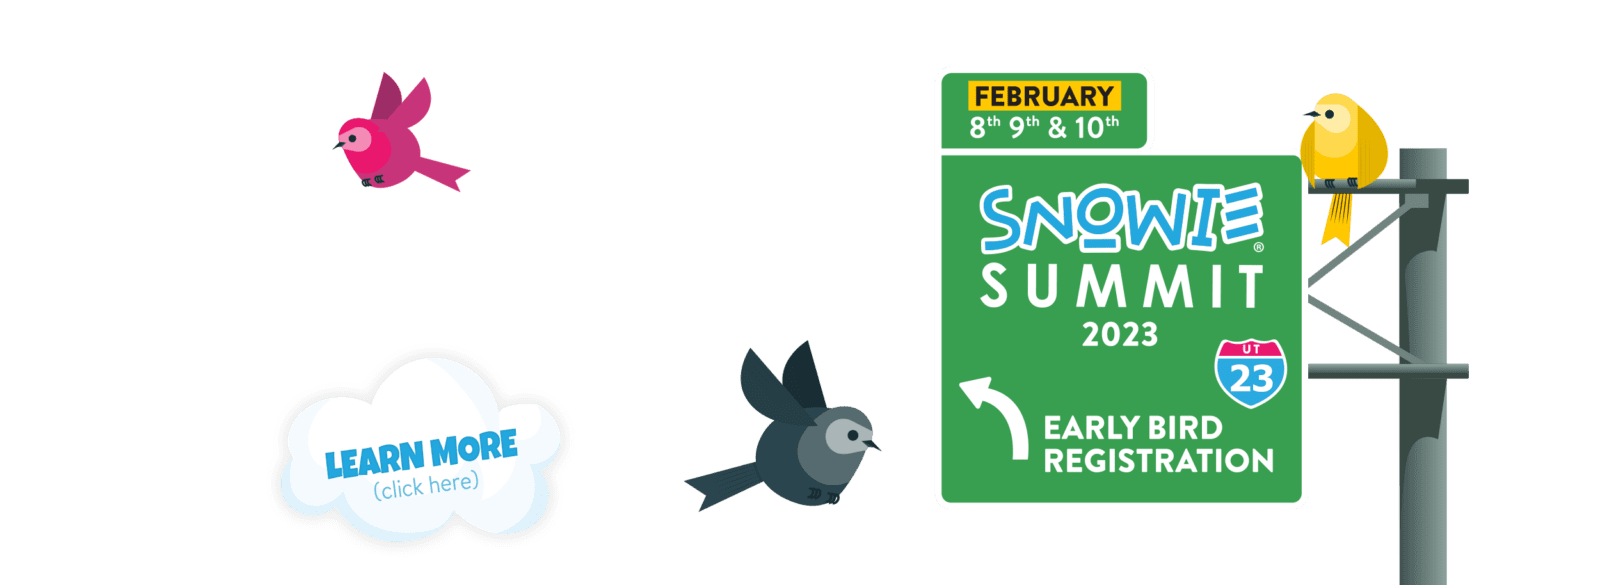 Snowie Summit 2023